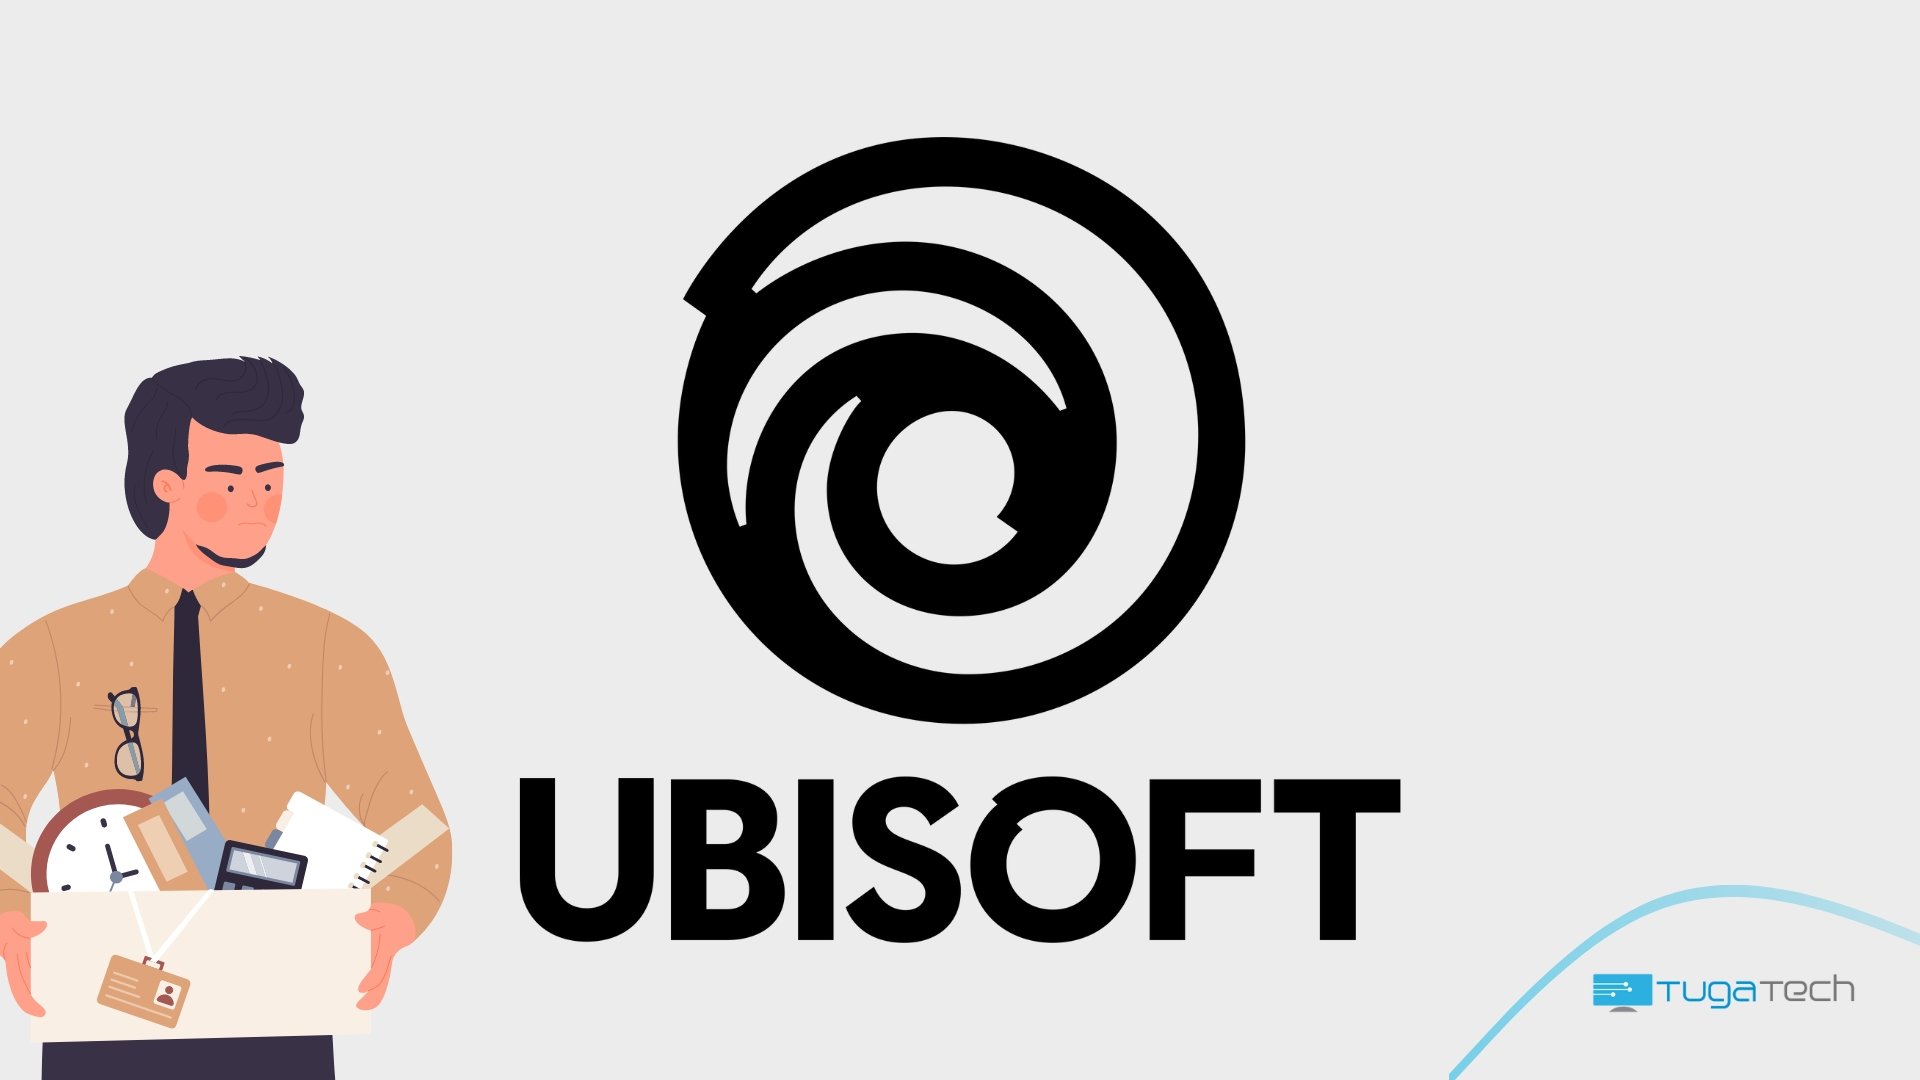 Logo da Ubisoft com funcionário despedido